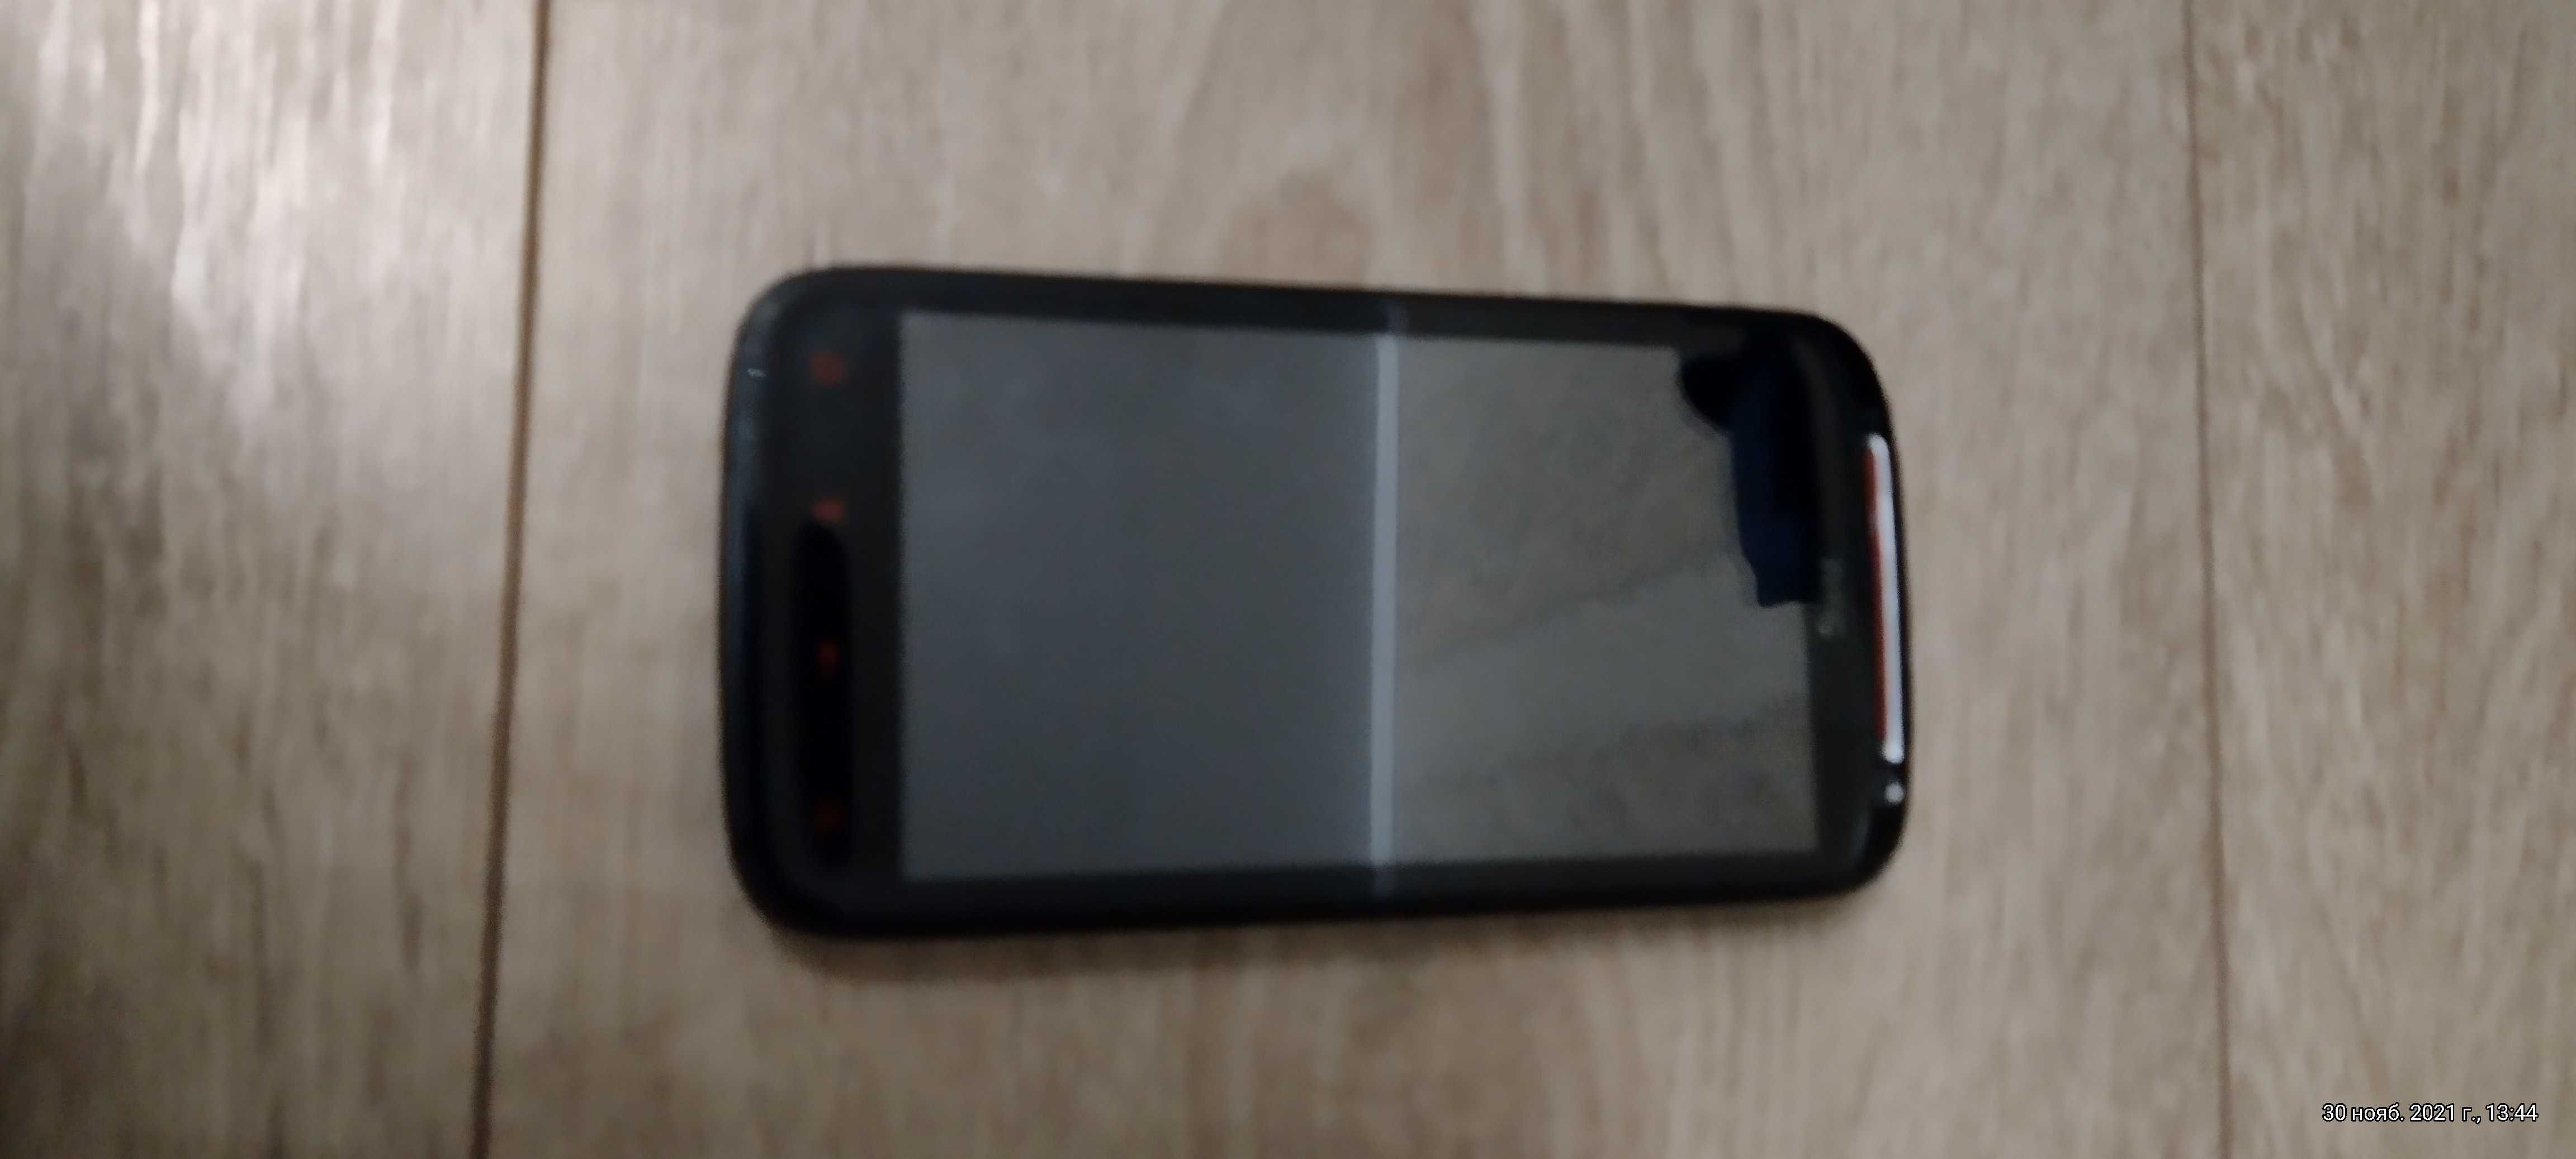 Смартфон HTC Sensation XE Z715e